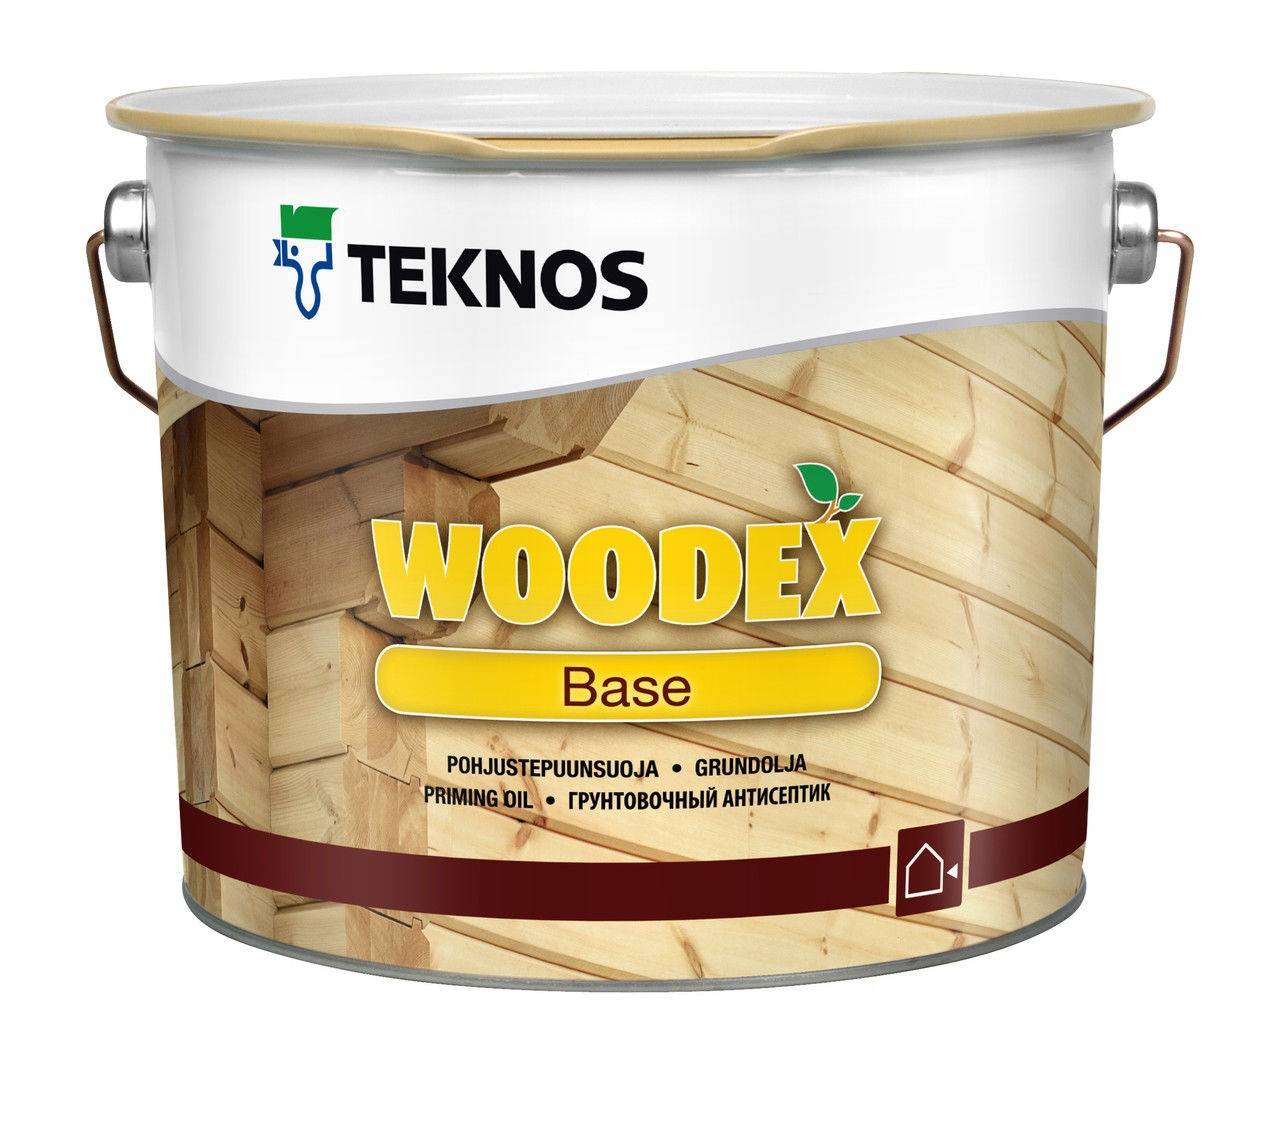 Грунтовка по дереву для наружных работ. Teknos Woodex Base, 3 л. Вудекс Аква бейс Текнос. Антисептик Teknos Woodex. Woodex Base грунтовочный антисептик.